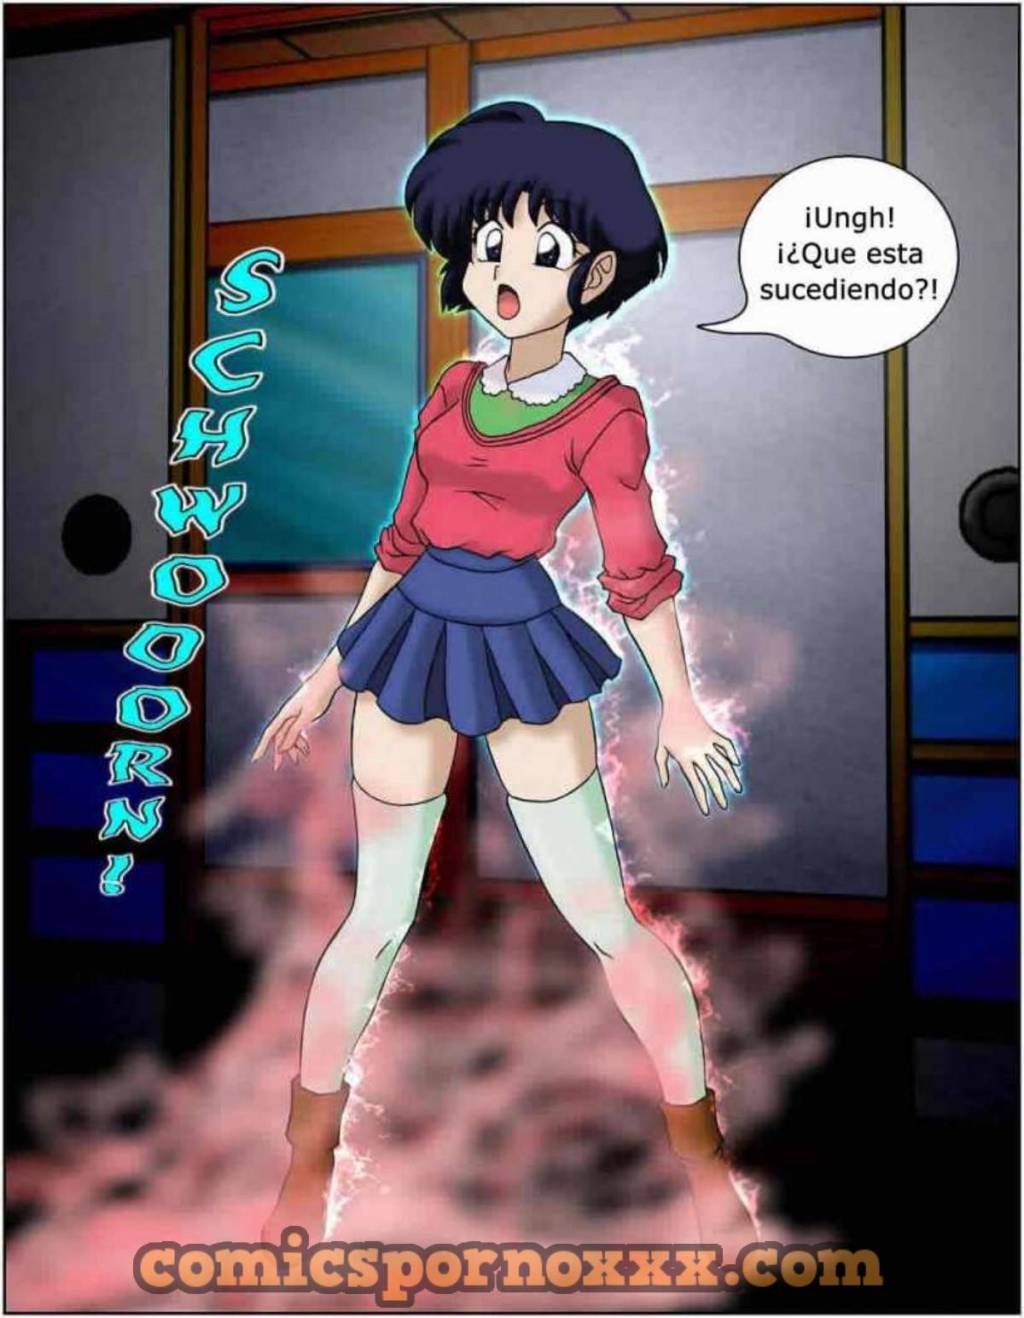 I Dream of Akane - 5 - Comics Porno - Hentai Manga - Cartoon XXX